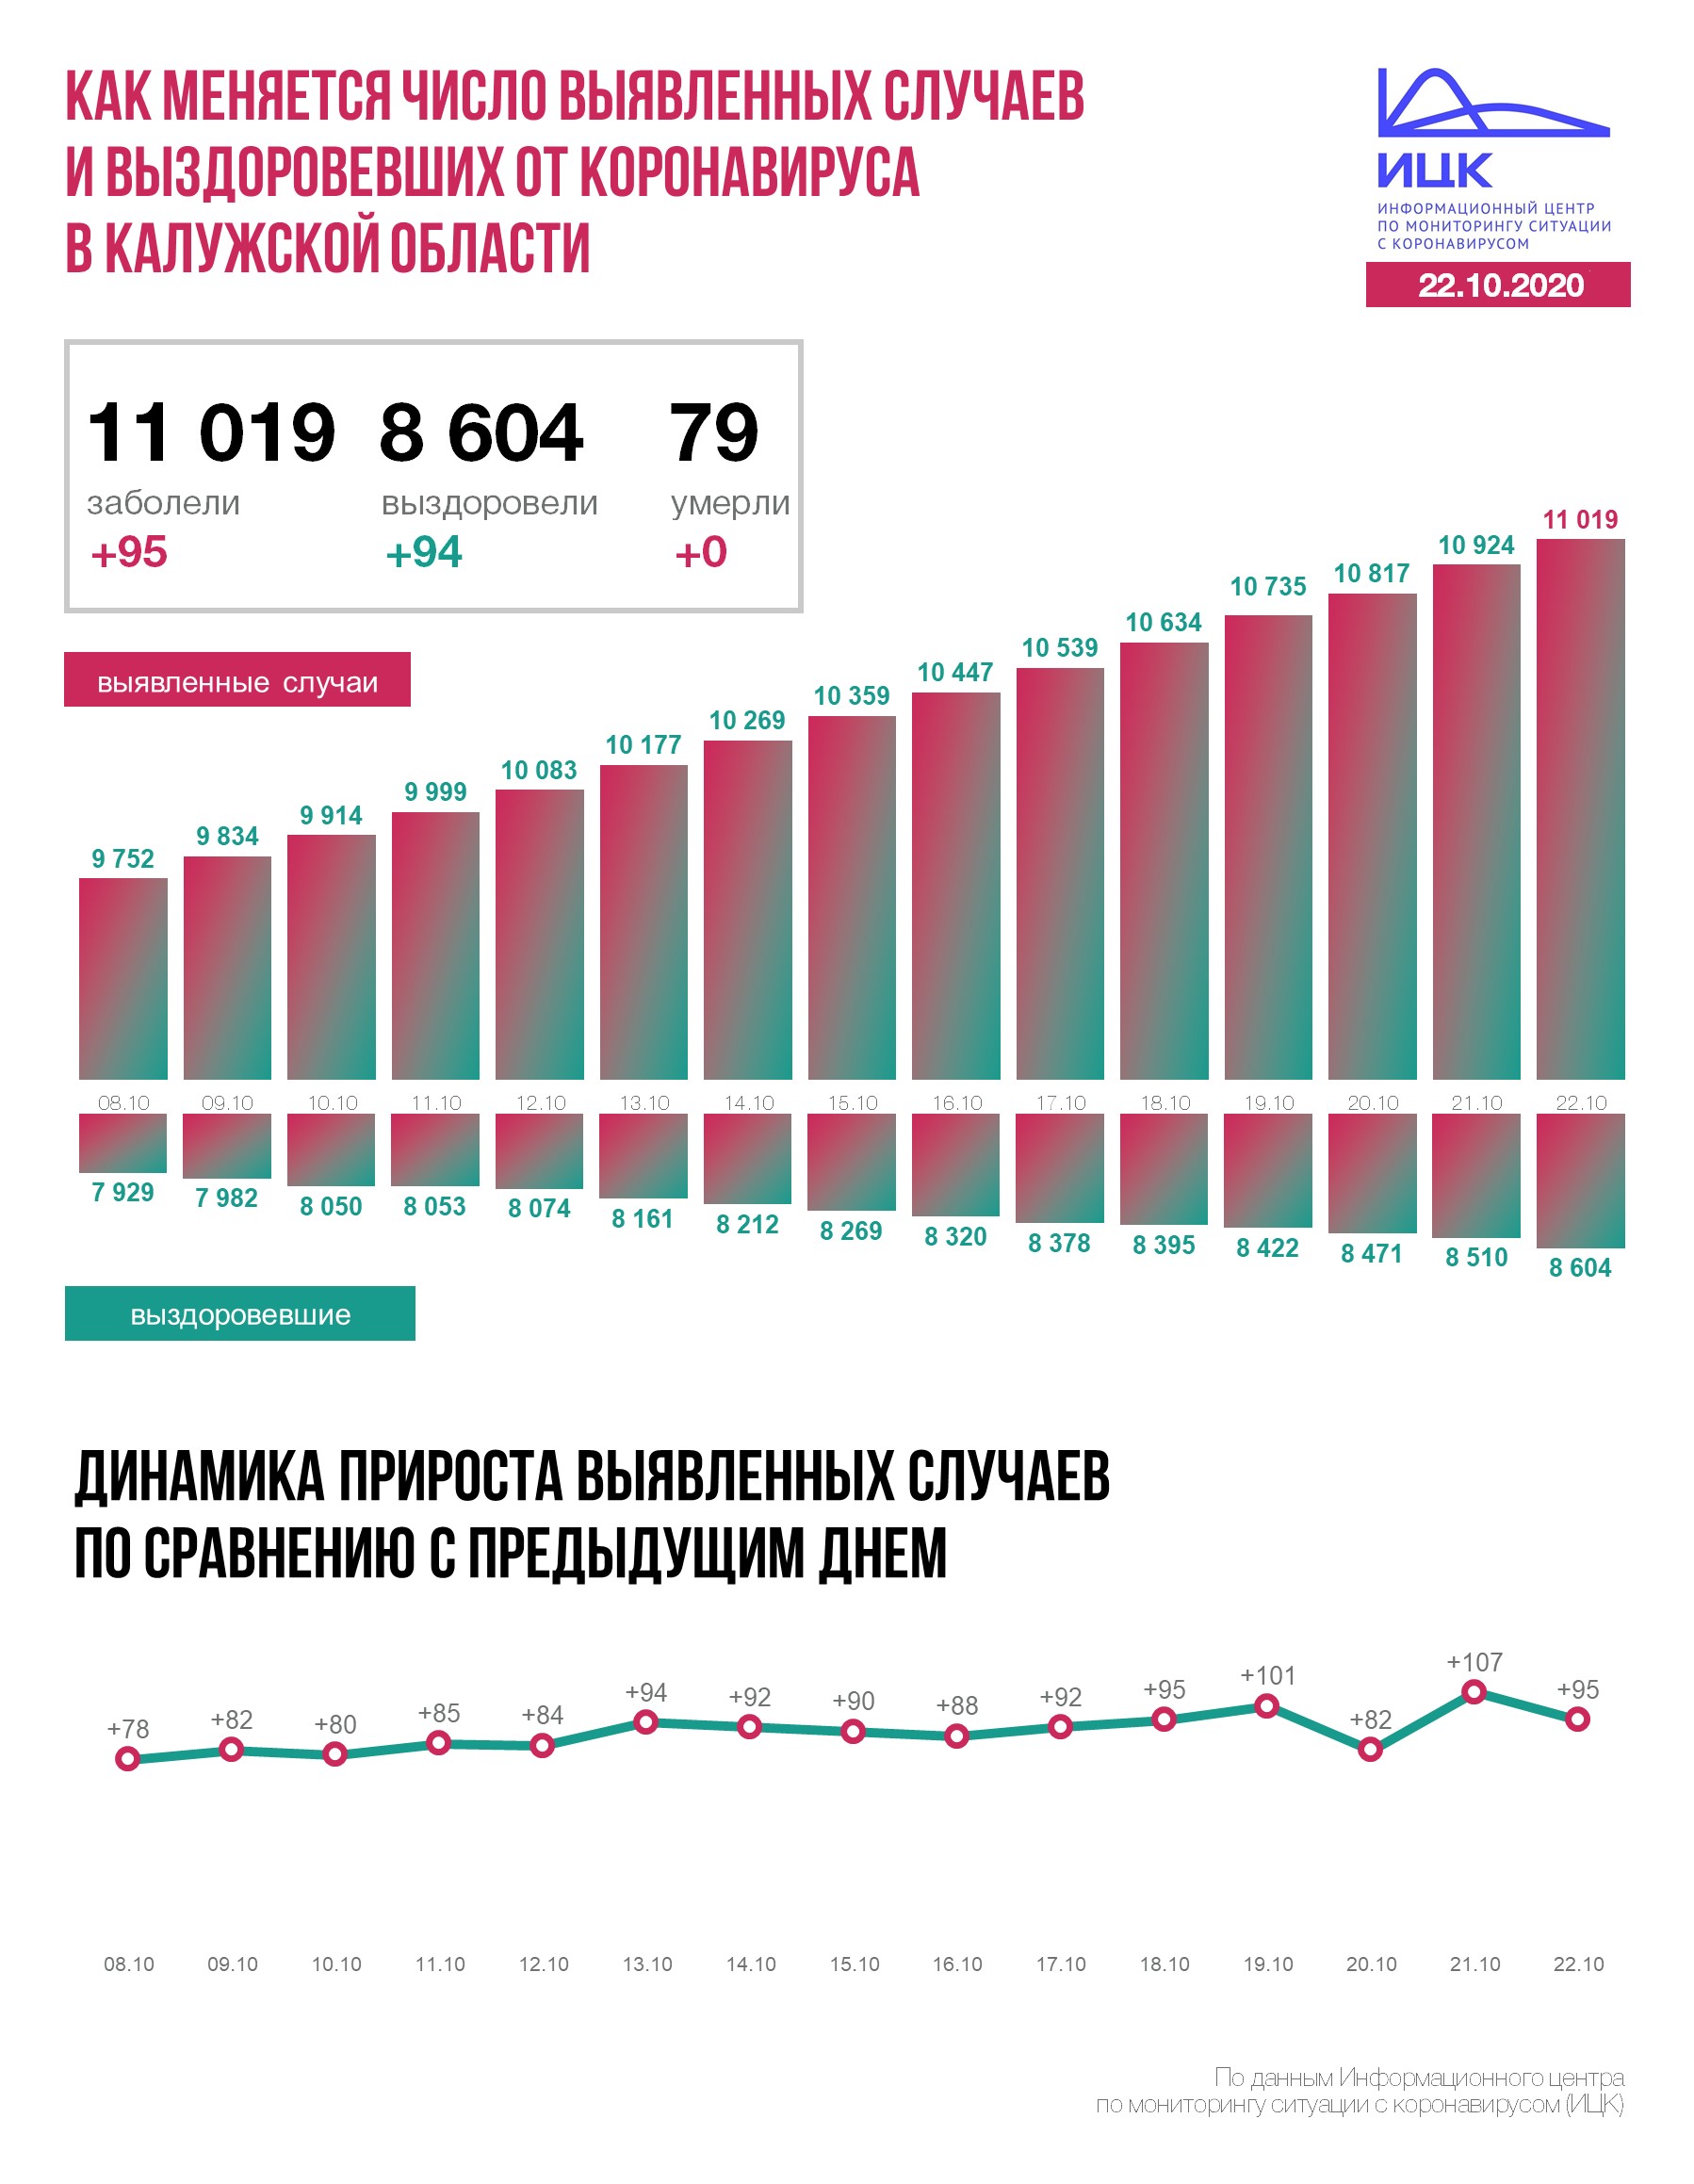 Официальные данные федерального оперативного штаба по коронавирусу в Калужской области на 22 октября 2020 года.